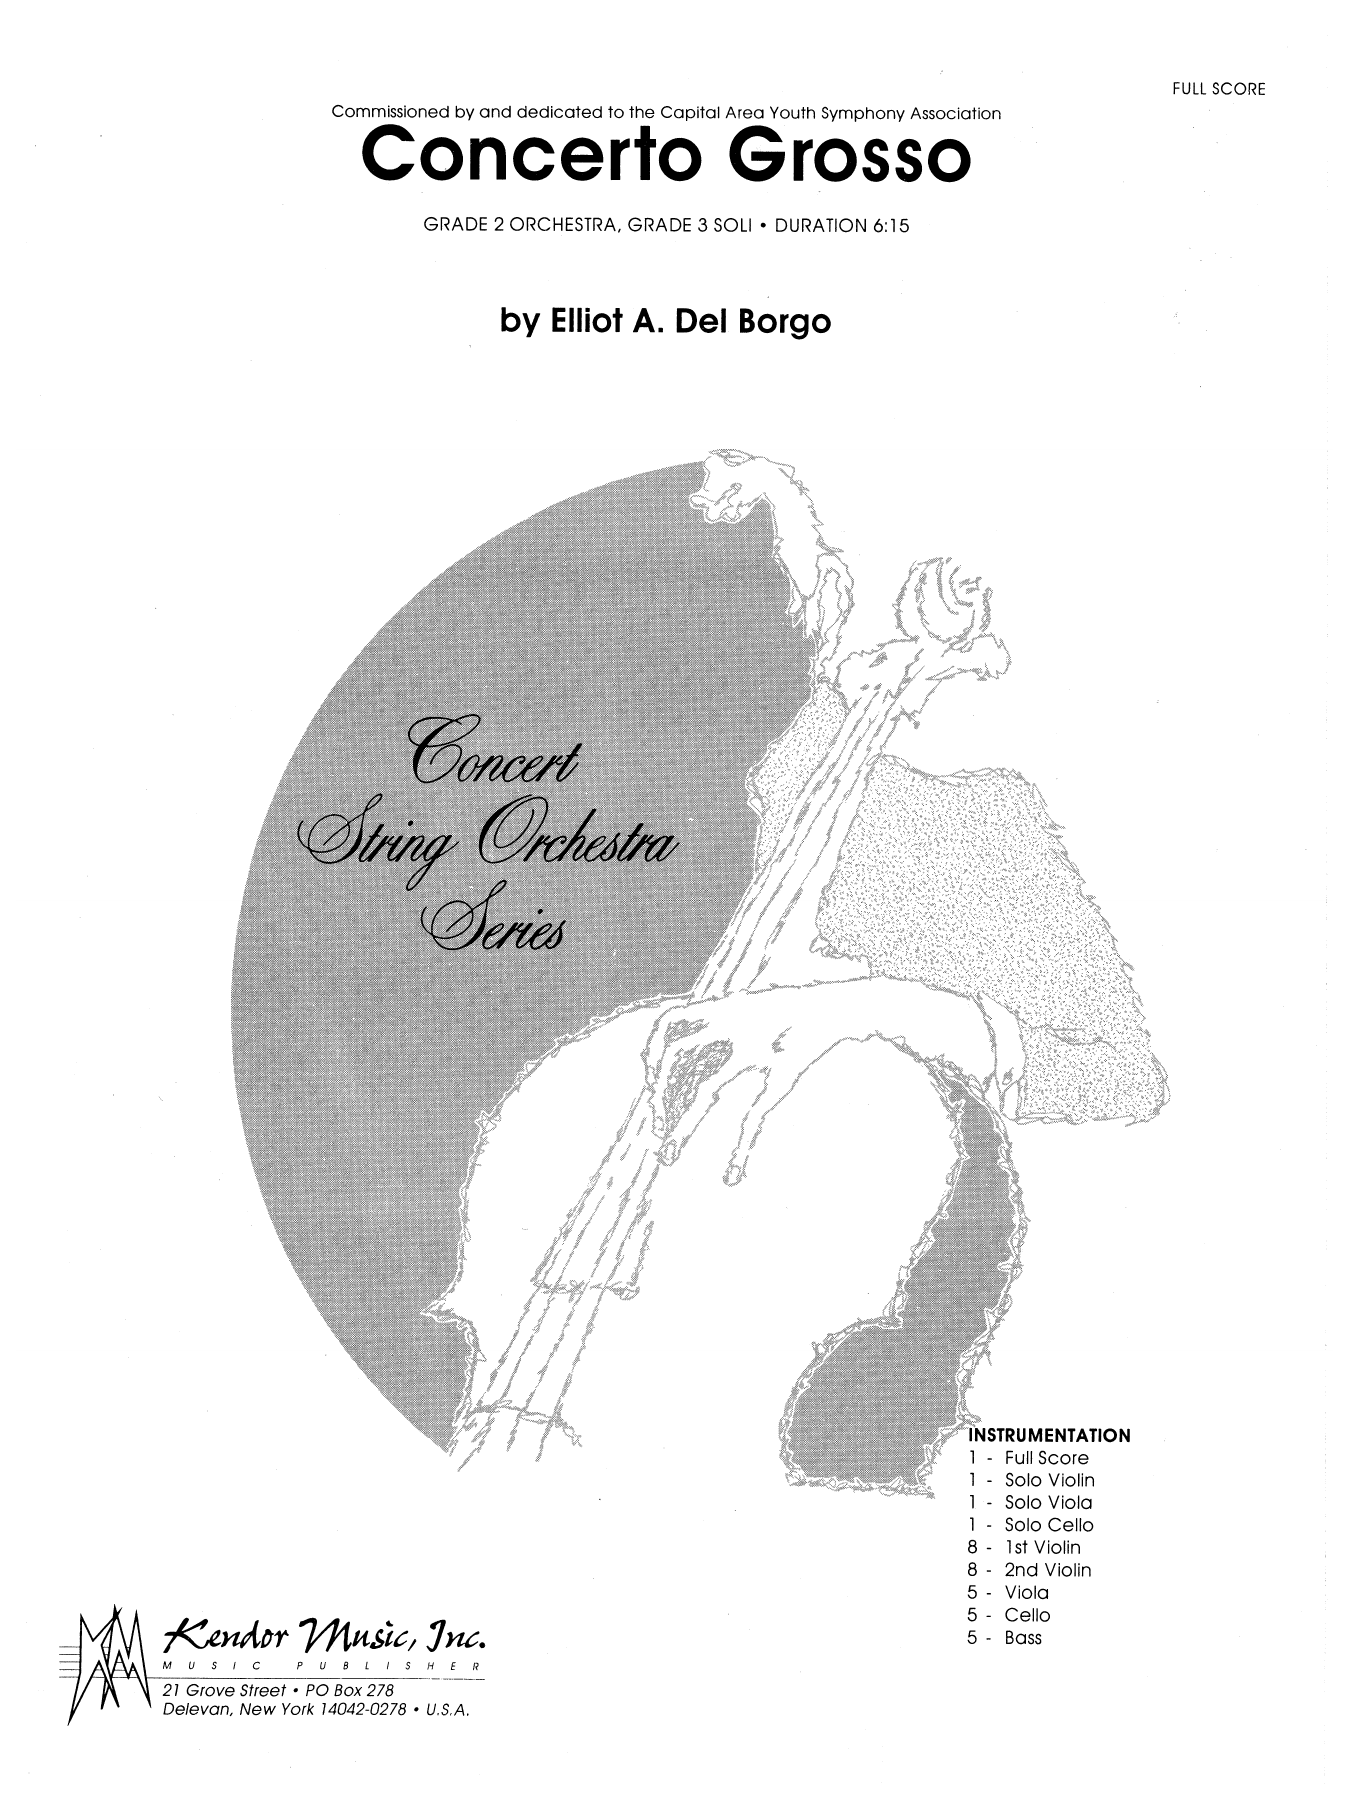 Concerto Grosso - Full Score sheet music